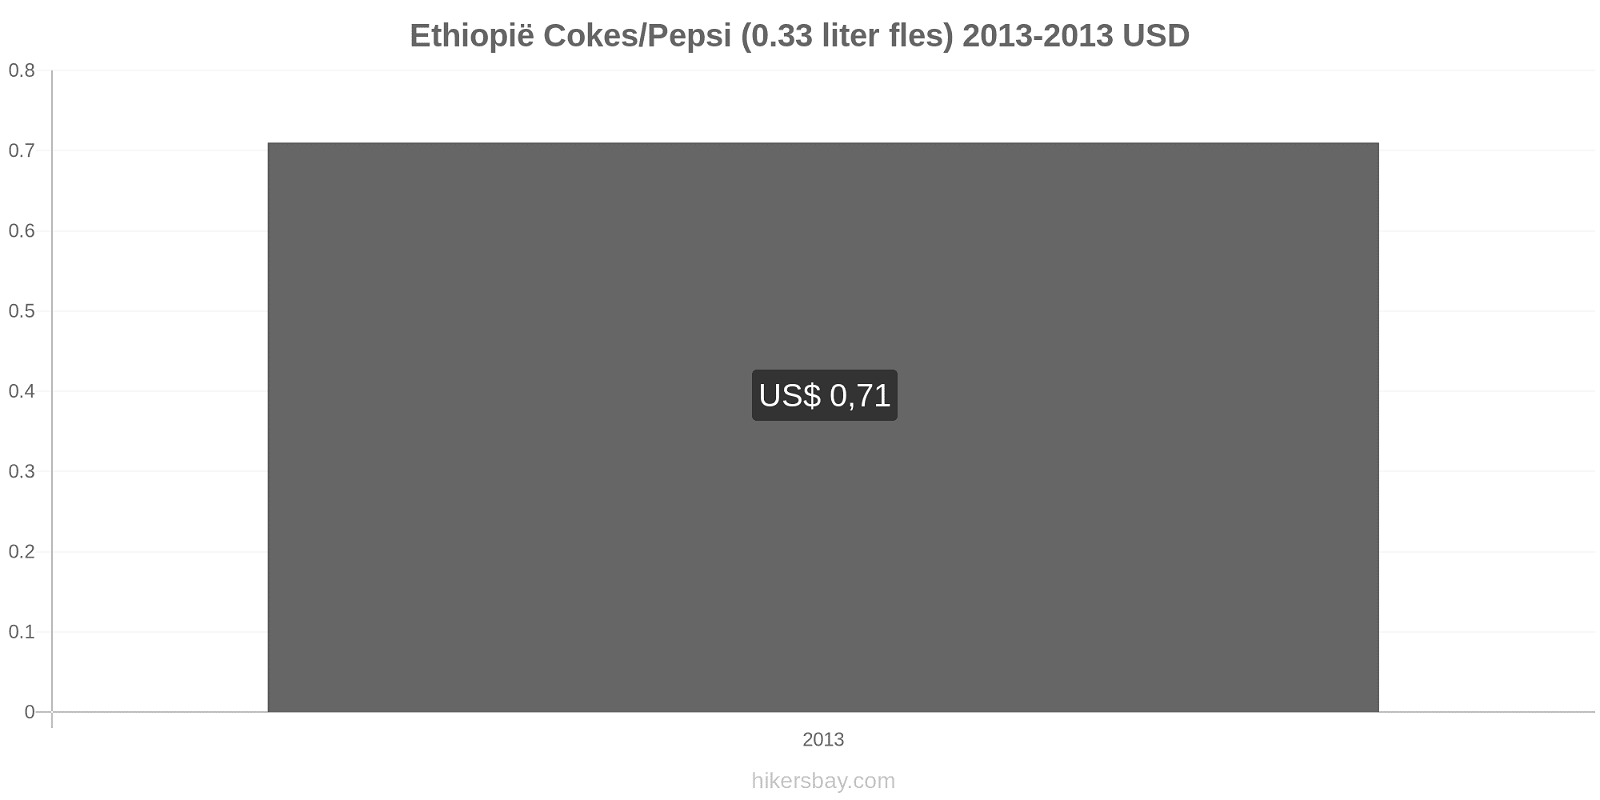 Ethiopië prijswijzigingen Coca-Cola/Pepsi (0.33 liter fles) hikersbay.com